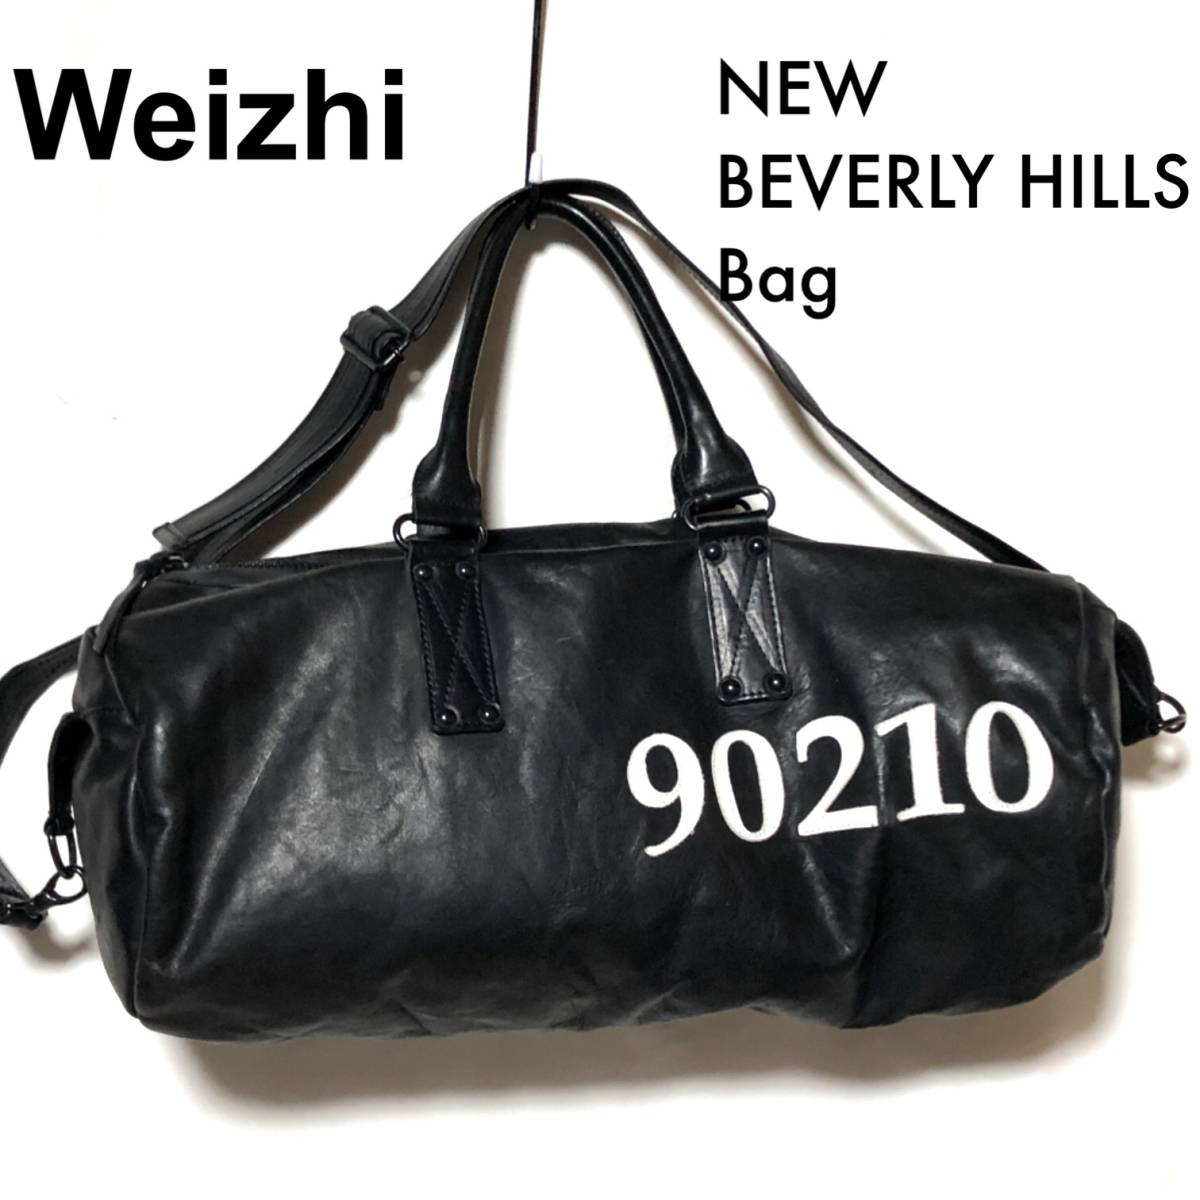 逆輸入 Weizhi 2WAY Bag HILLS BEVERLY ドラムボストン/NEW 90210 ビバリーヒルズ レザーバッグ/ウェイジー ボストンバッグ